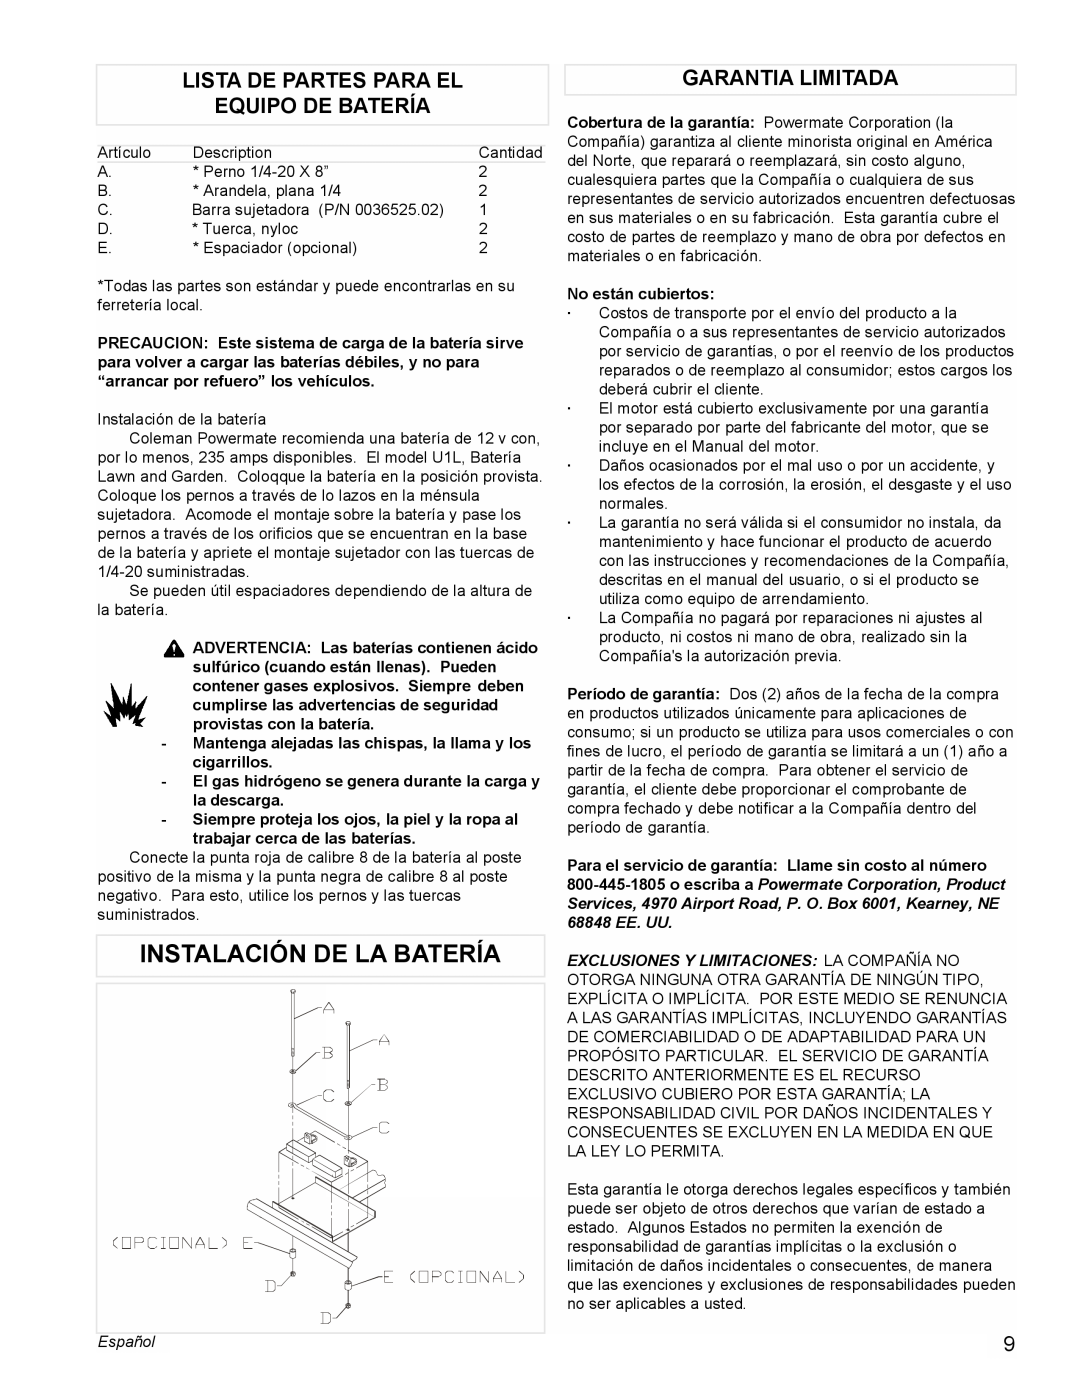 Powermate PM0545001 manual Instalación De La Batería, Lista De Partes Para El Equipo De Batería, Garantia Limitada, Español 